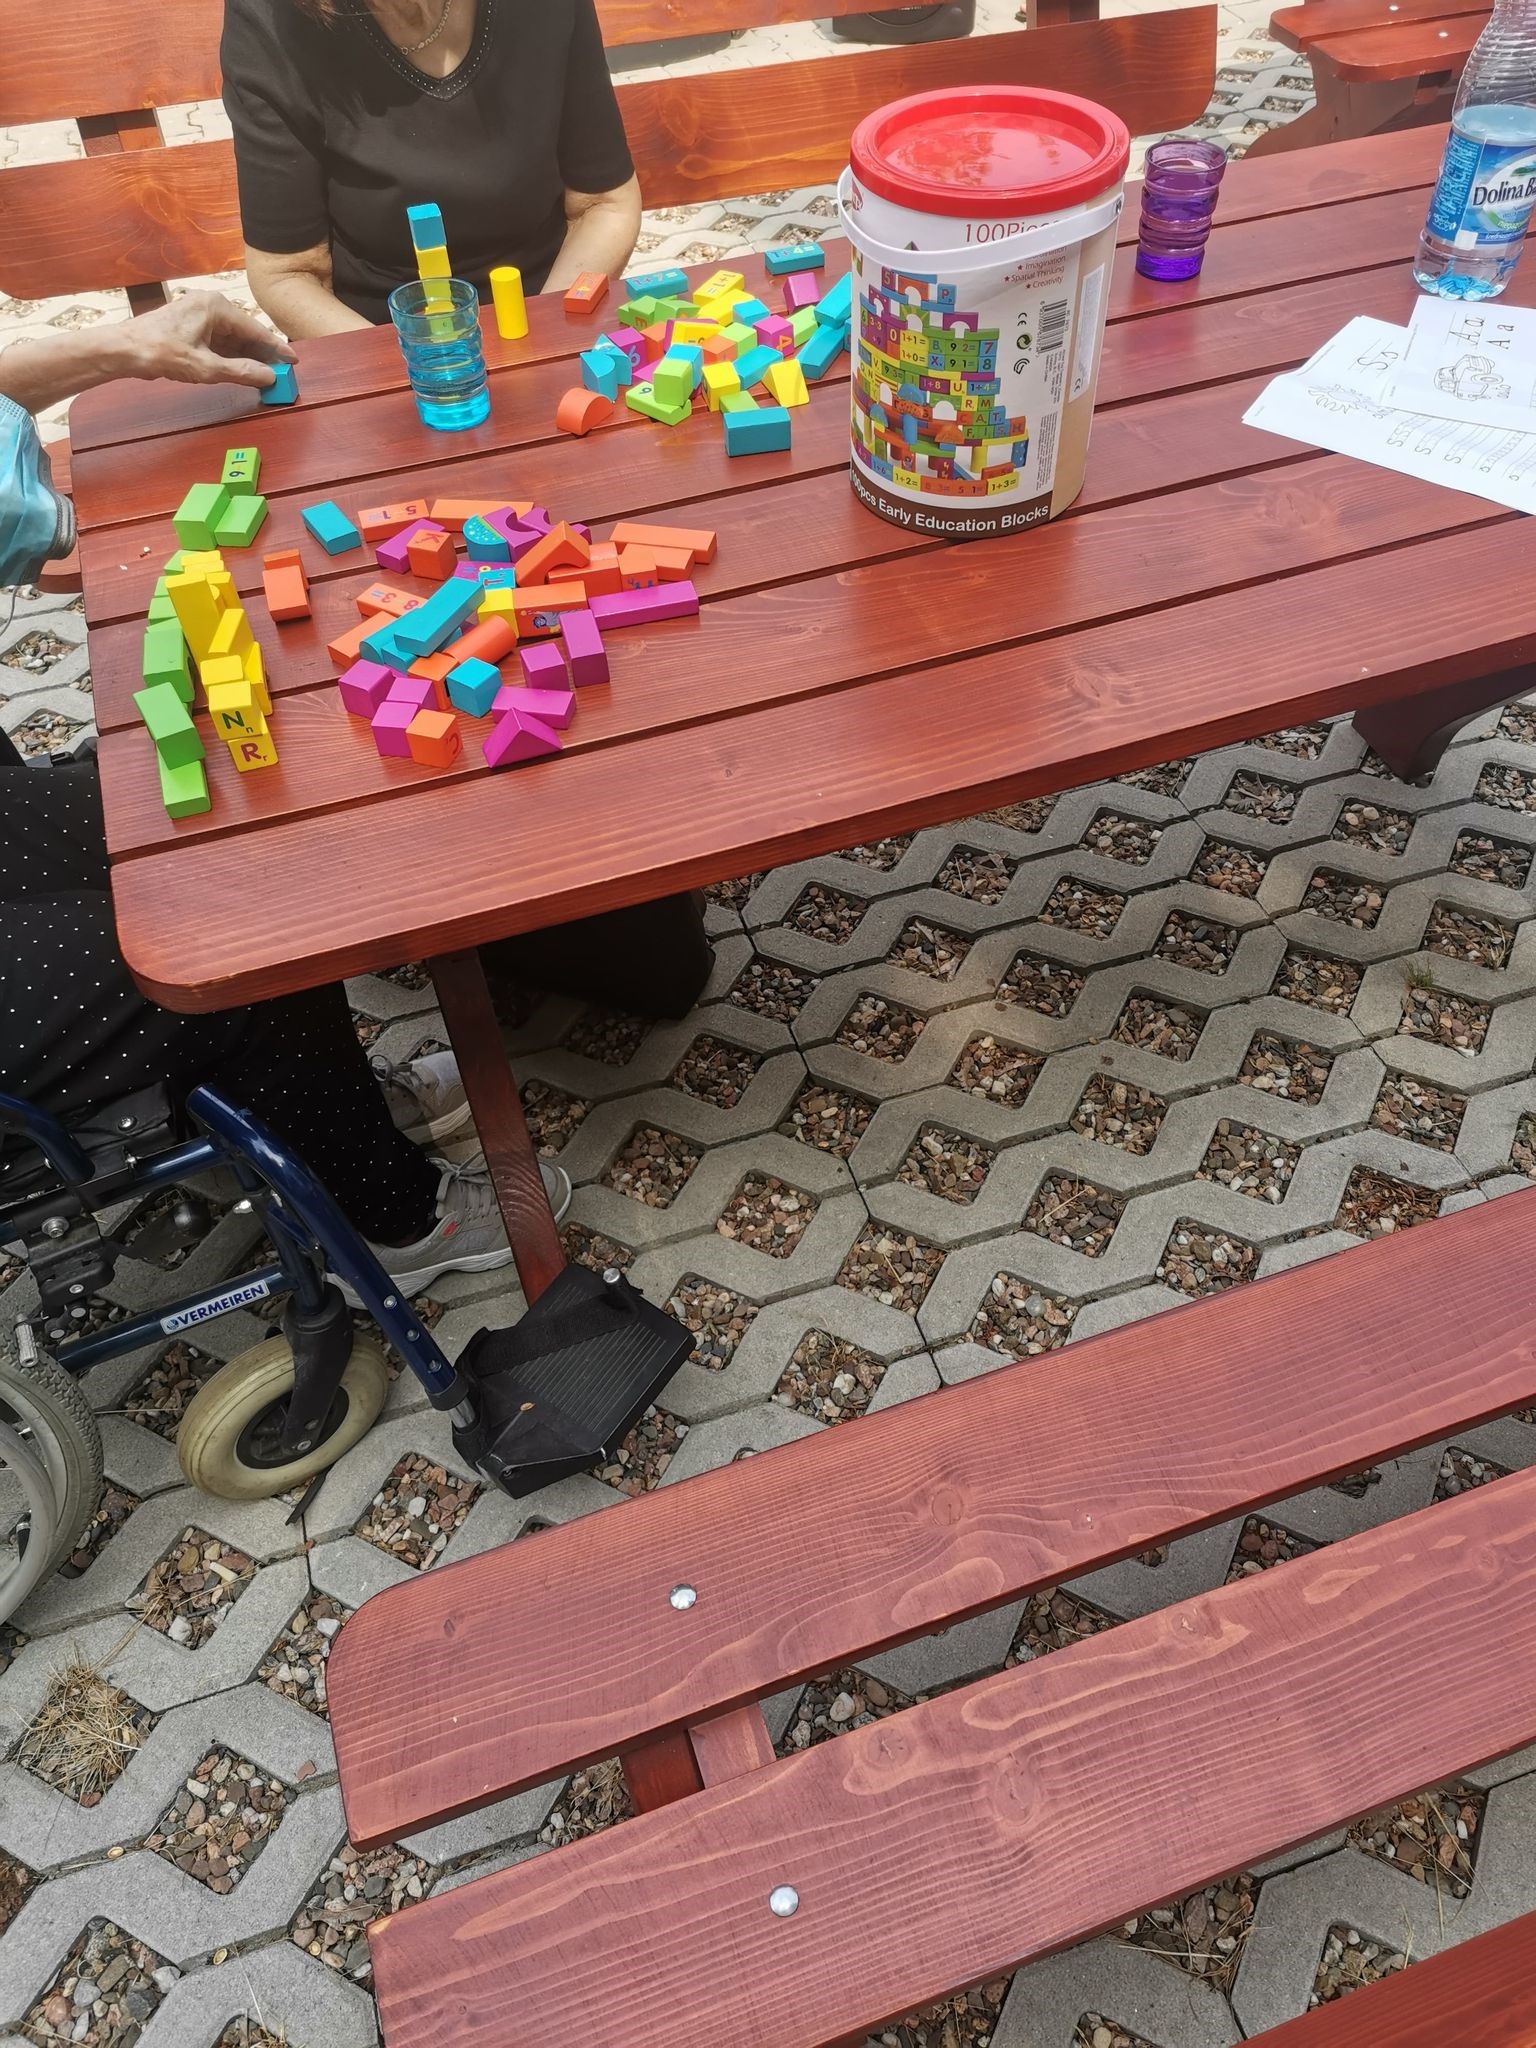  Kadr z zajęć trenujących koordynację wzrokowo – ruchową. Zdjęcie brązowego, drewnianego stołu, na którym znajdują się klocki w kolorze fioletowym, żółty, zielonym, pomarańczowym i niebieskim.